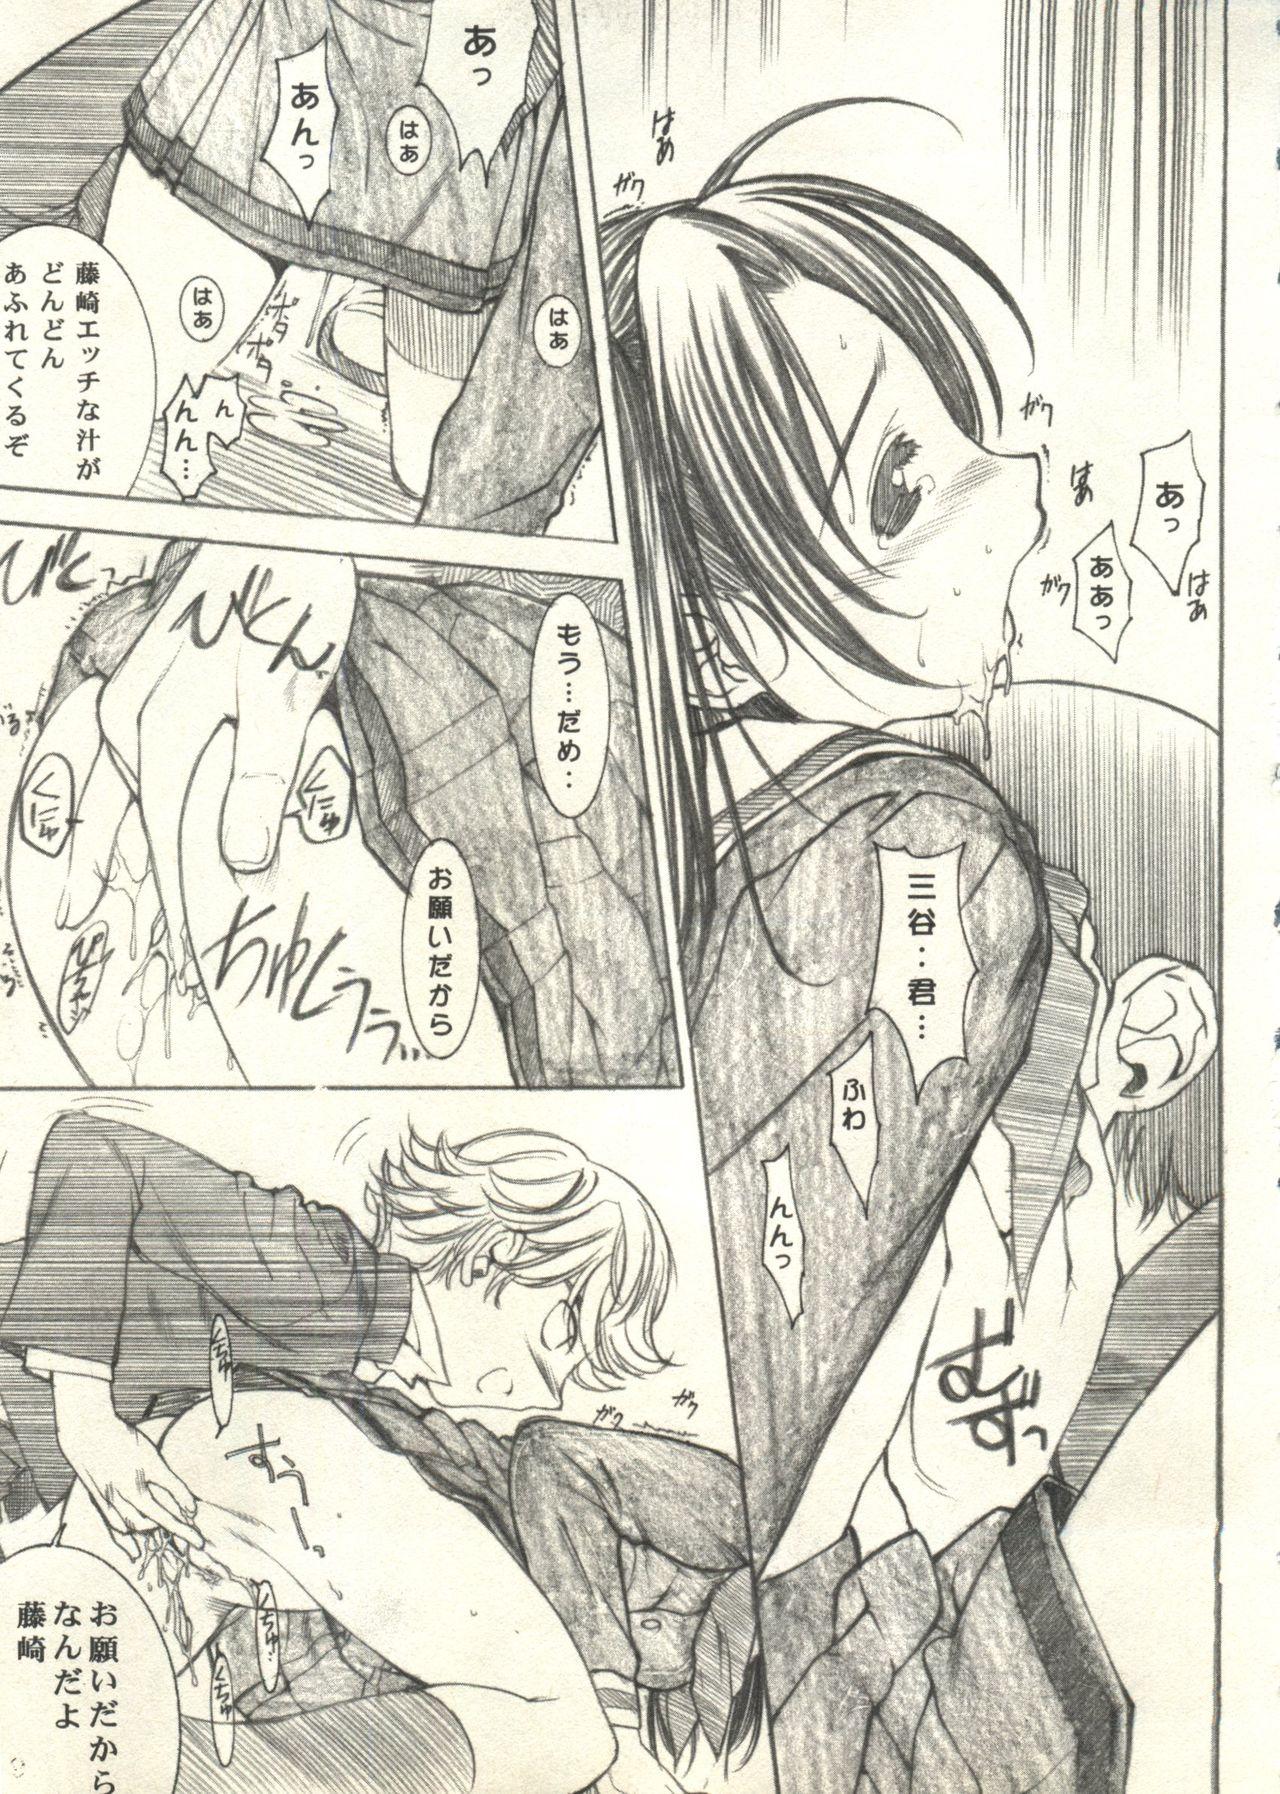 Bishoujo Shoukougun 2000 Manga-Anime Hen 2 12